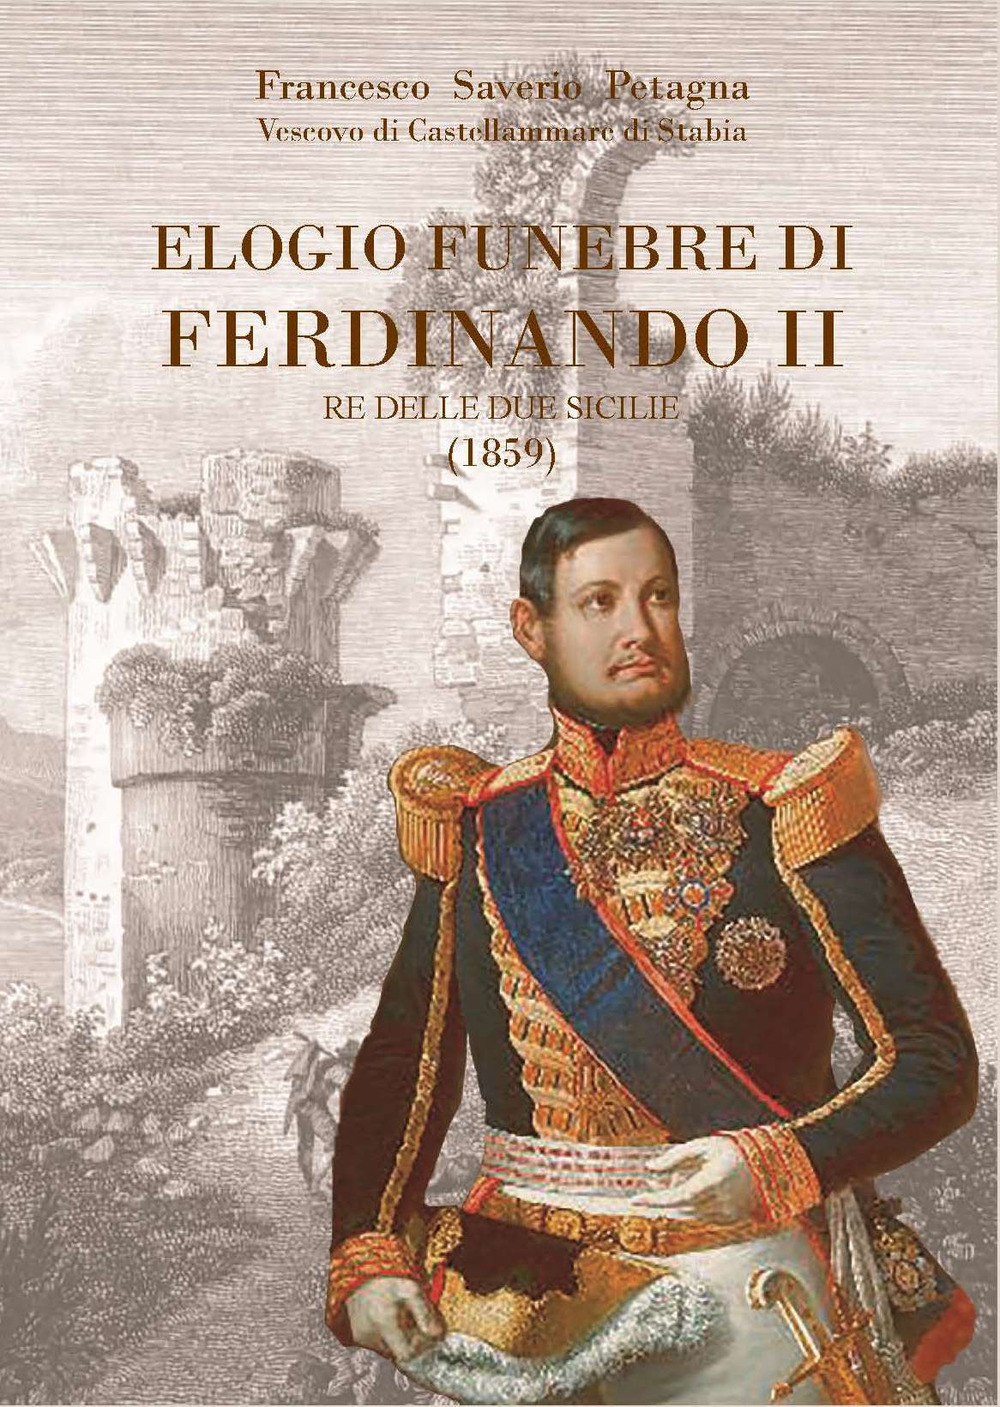 Elogio funebre alla pia memoria di Ferdinando II re del Regno delle Due Sicilie. Recitato nel dì 12 novembre nella Cattedrale di Castellamare